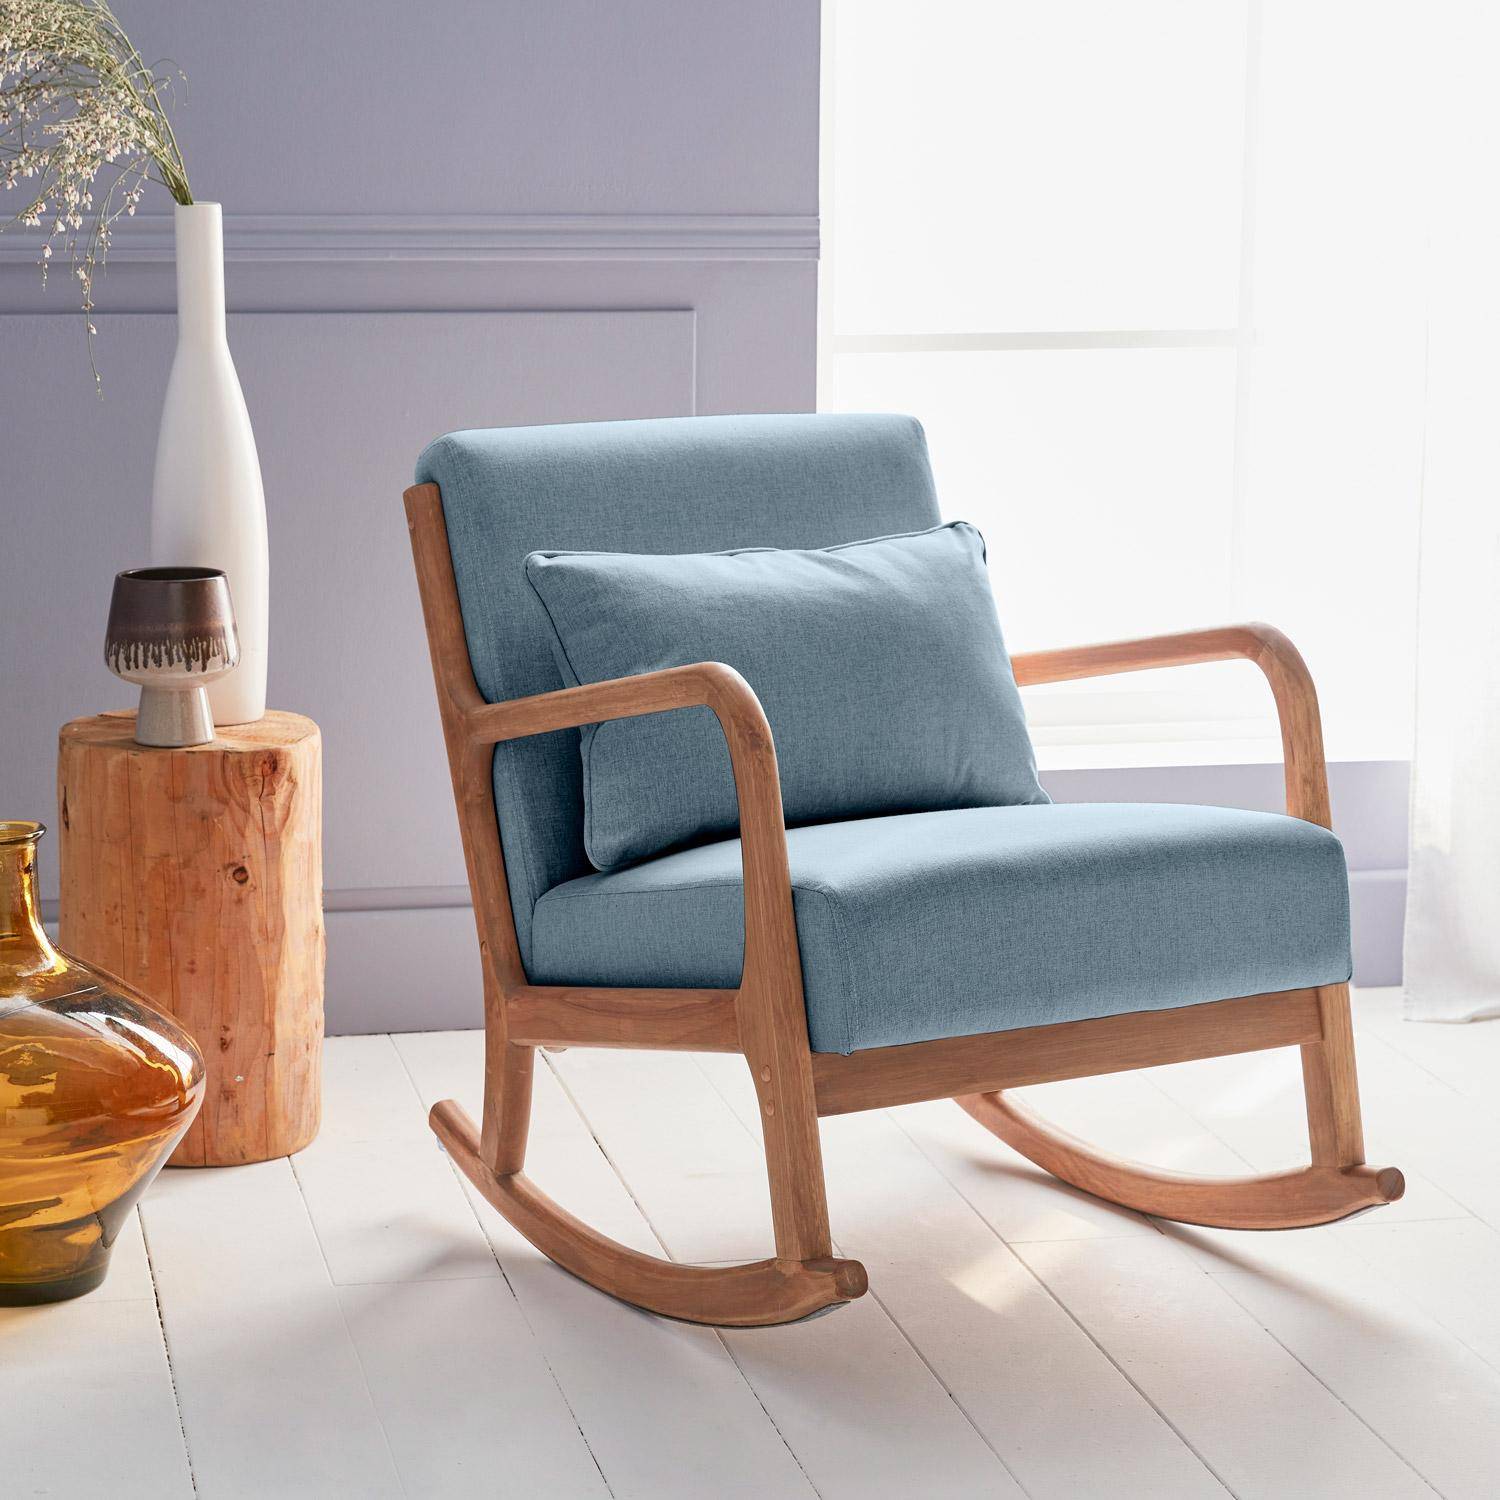 Fauteuil à bascule design en bois et tissu, 1 place, rocking chair scandinave, bleu Photo1